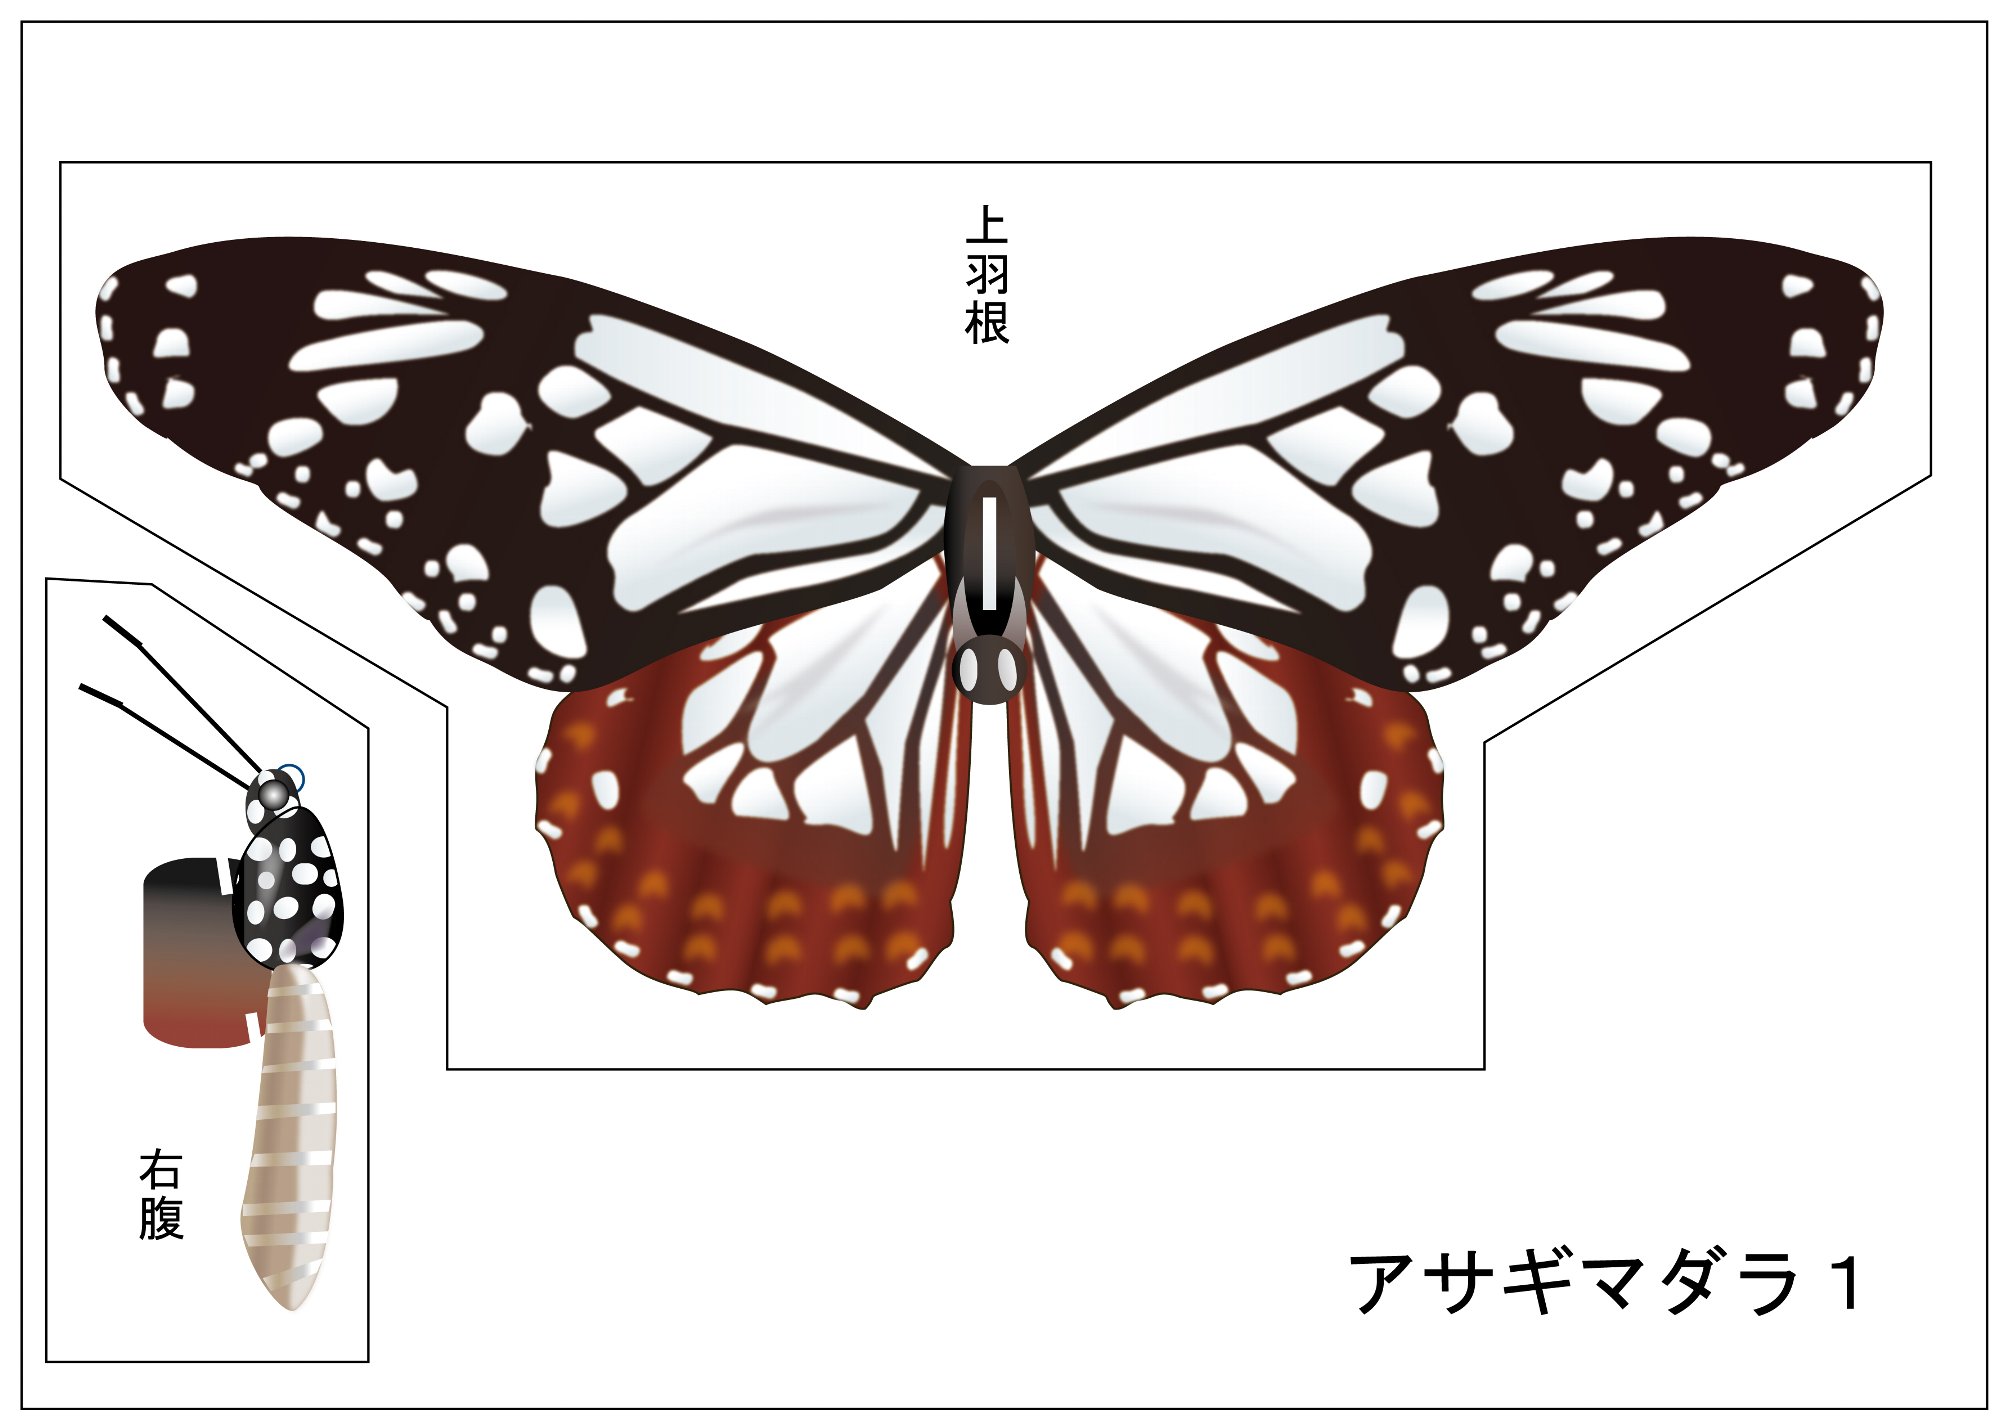 世界の人気ブランド 蝶の標本ペーパークラフトA3サイズ完成品